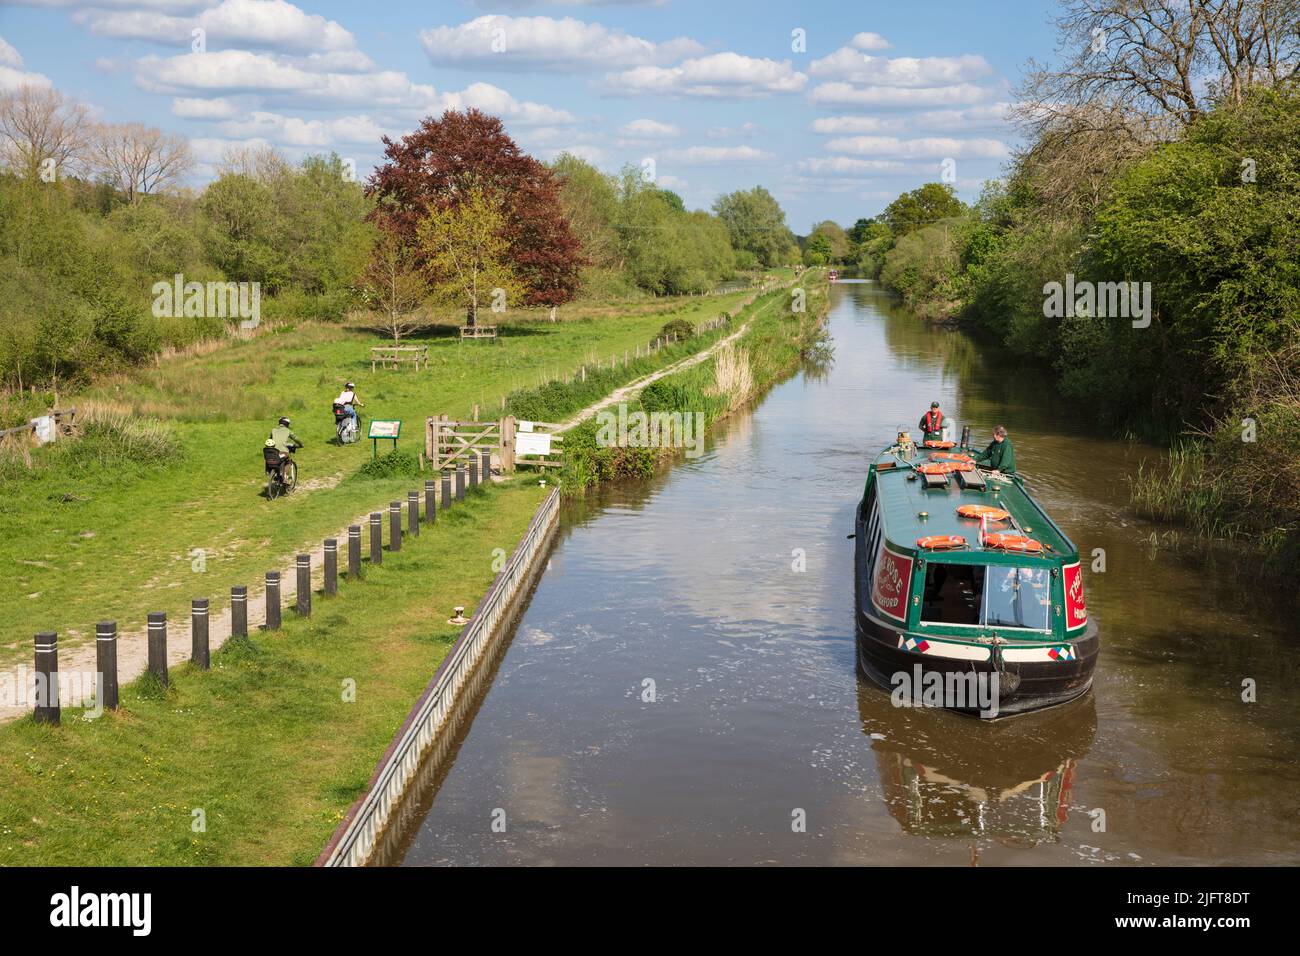 Vista lungo il canale Kennett e Avon con crociera della chiatta del canale alla luce del sole del pomeriggio, Hungerford, Berkshire, Inghilterra, Regno Unito, Europa Foto Stock